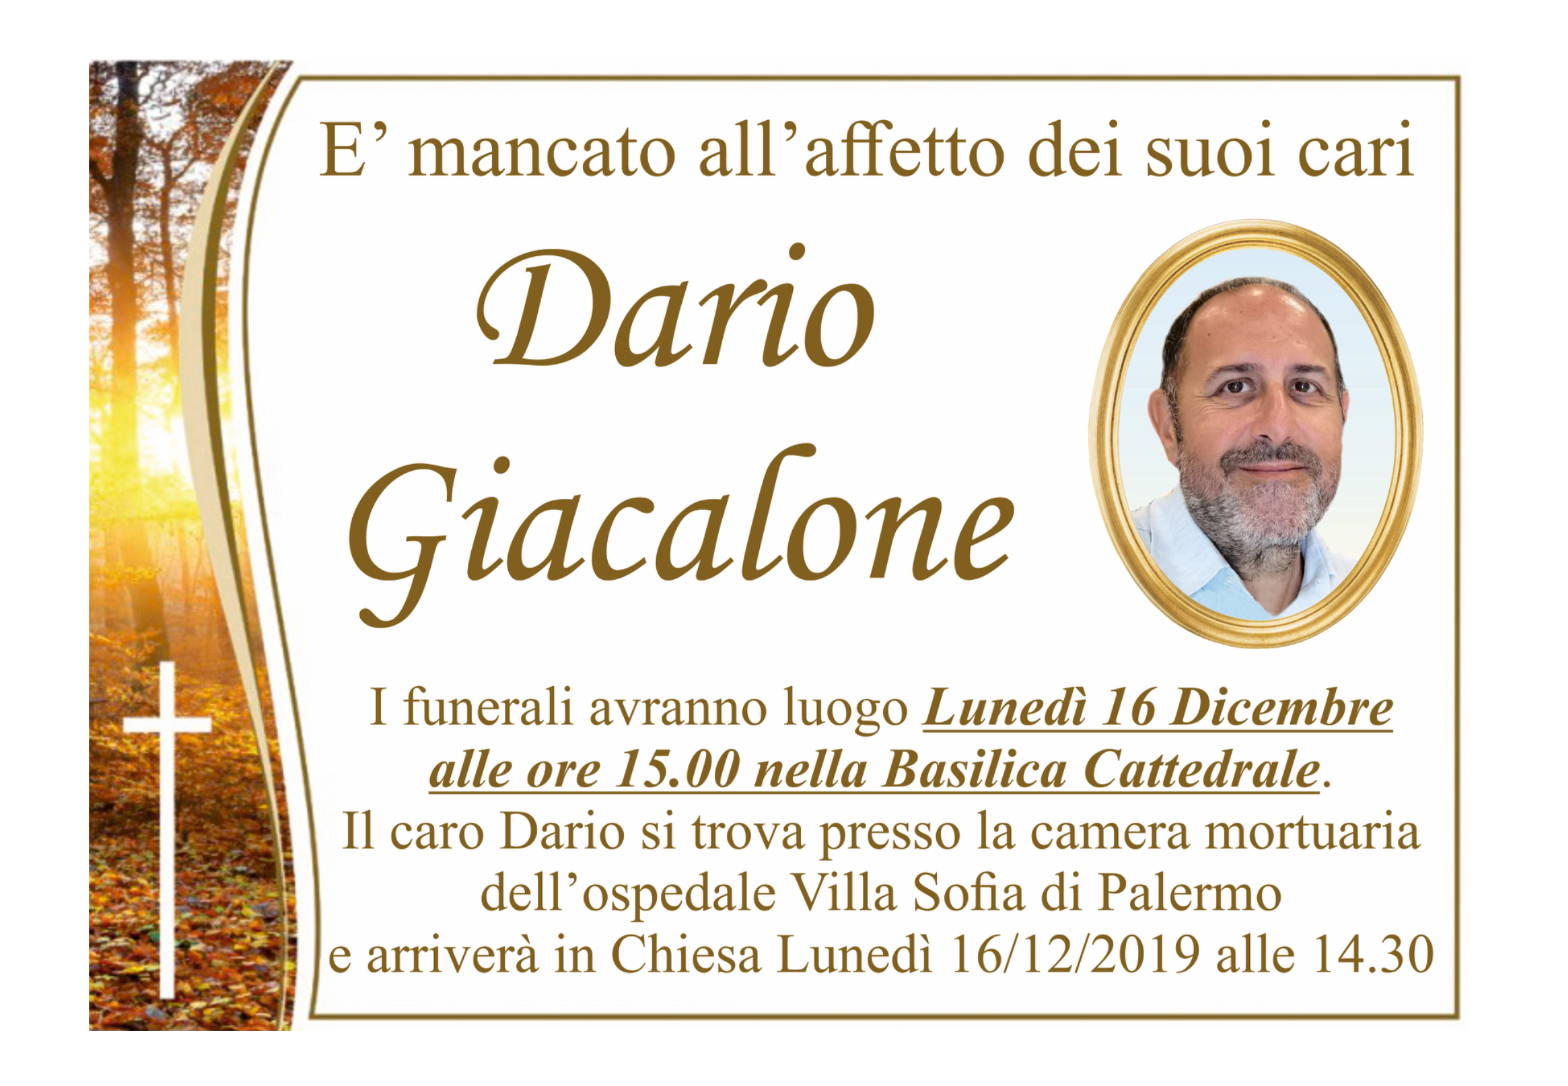 Dario Giacalone